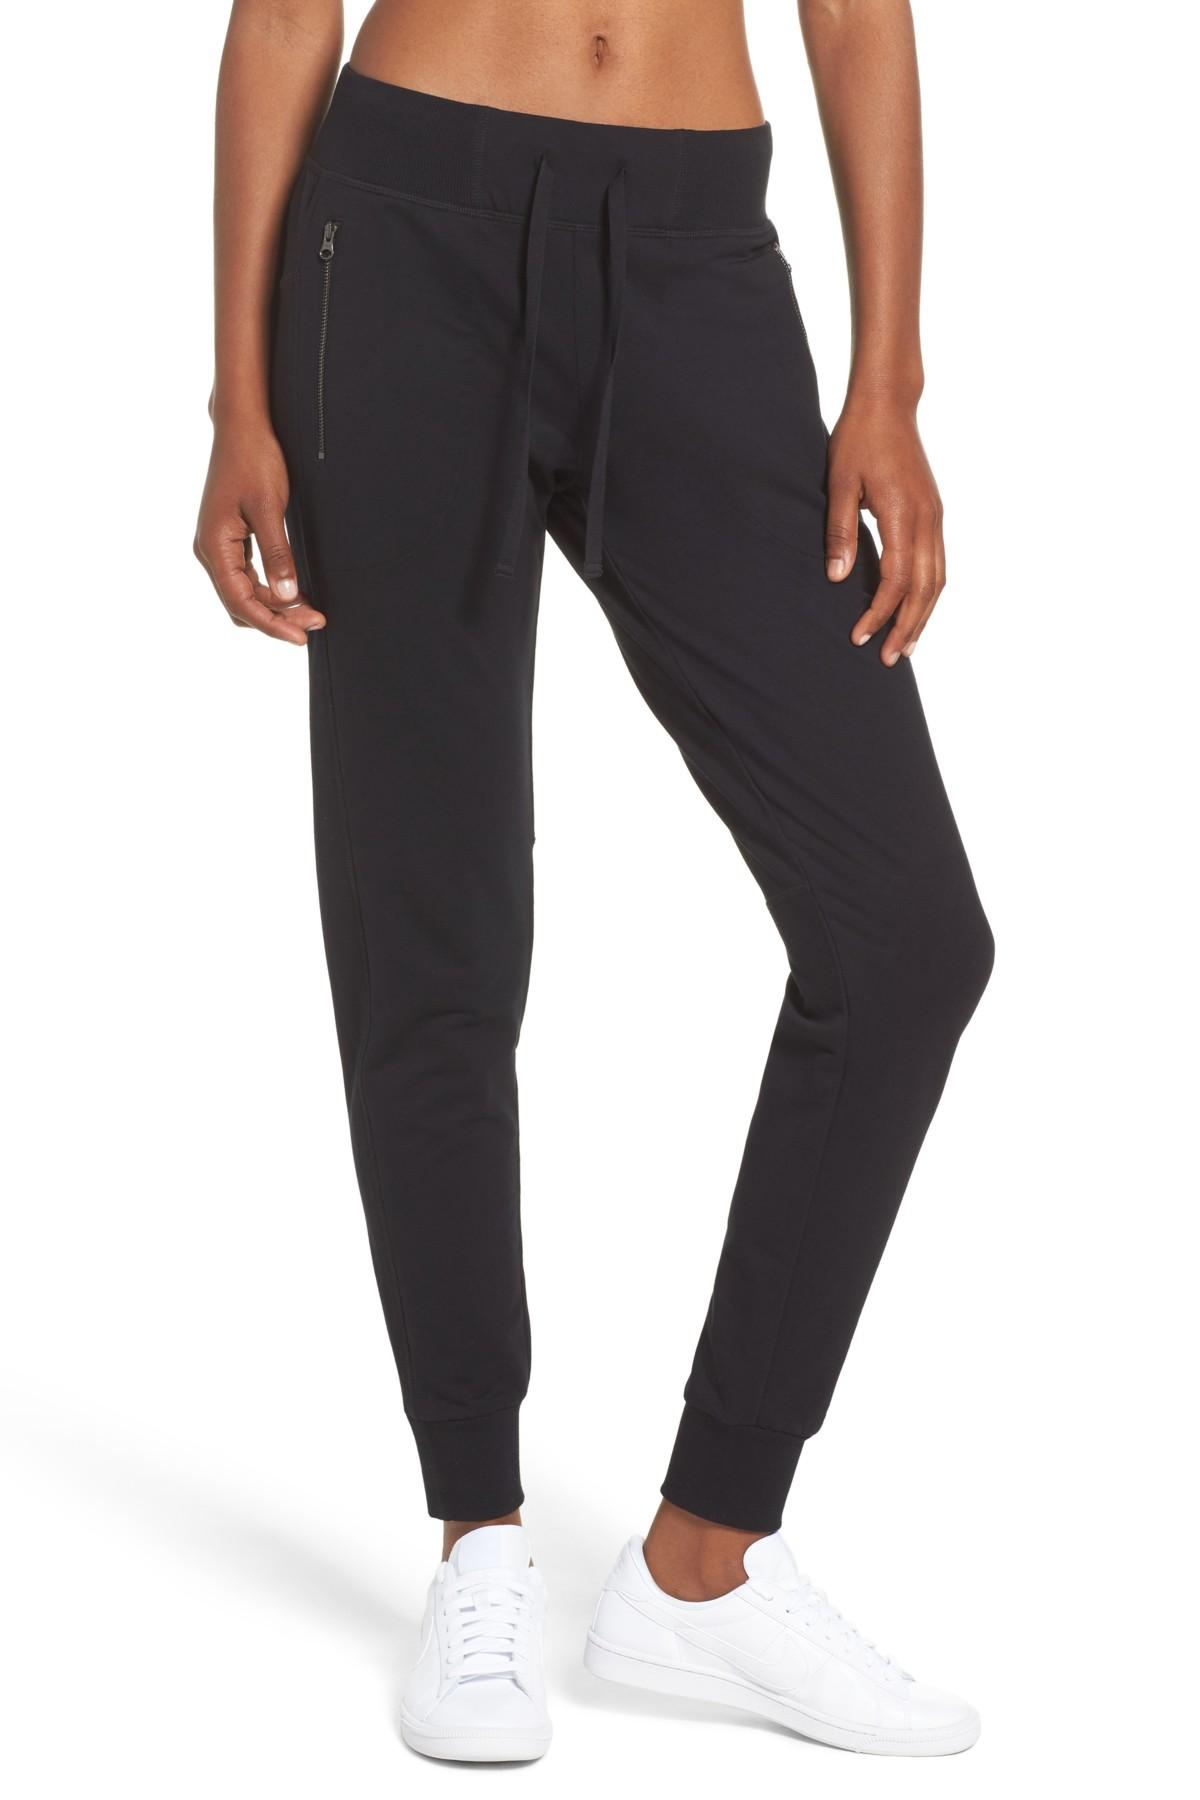 Zella Taryn Luxe Jogger Pants in Black